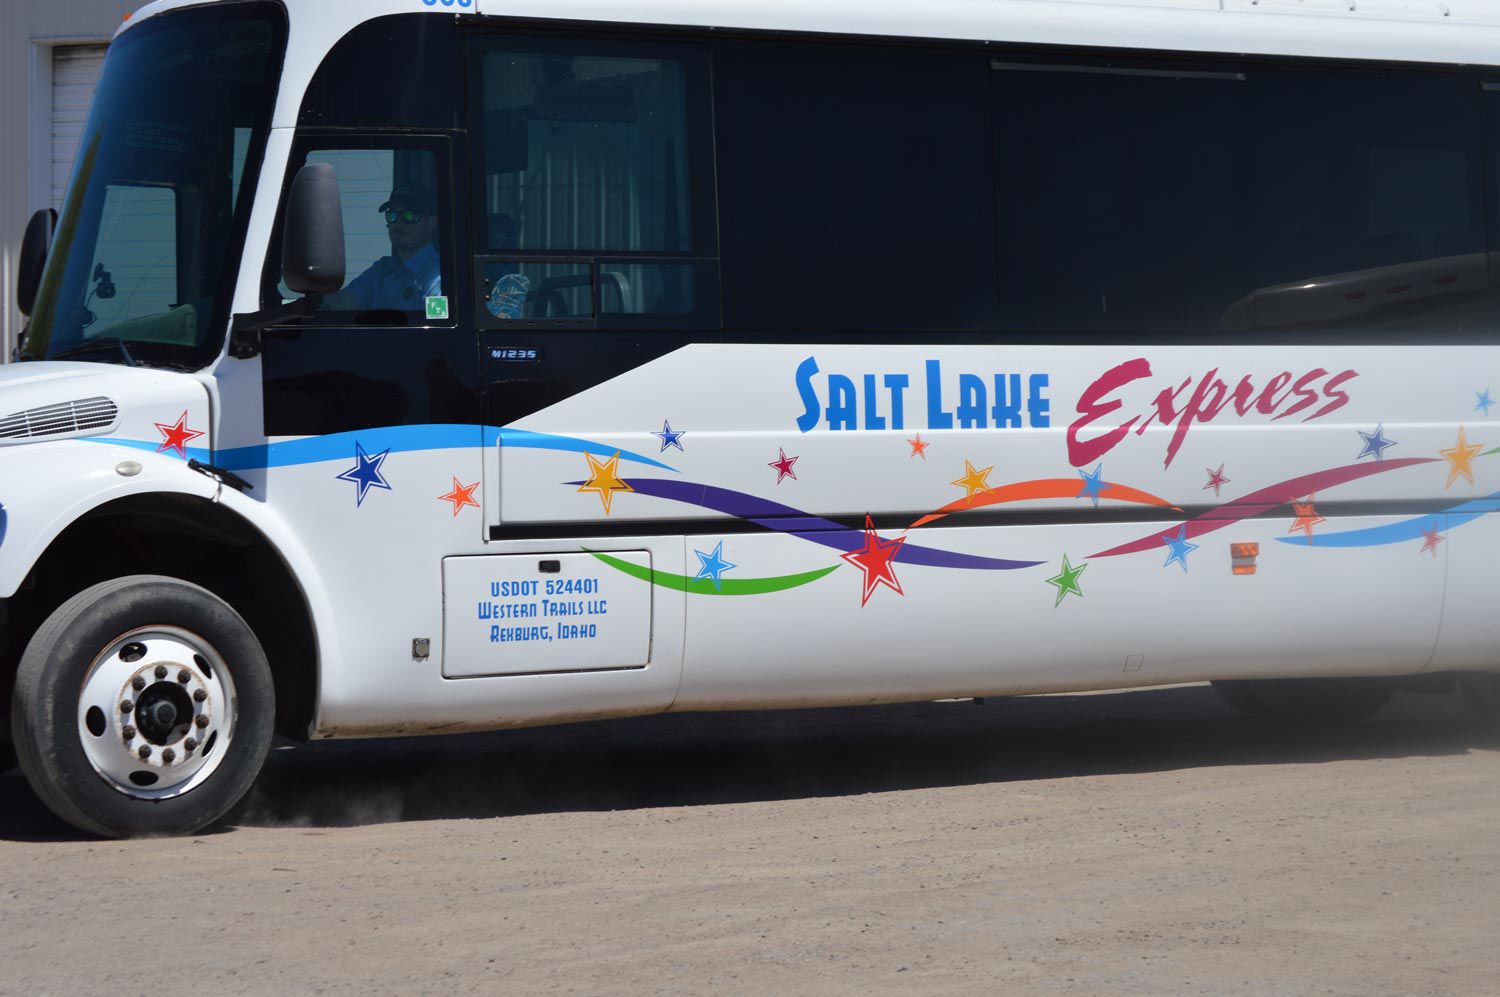 salt lake express bus service